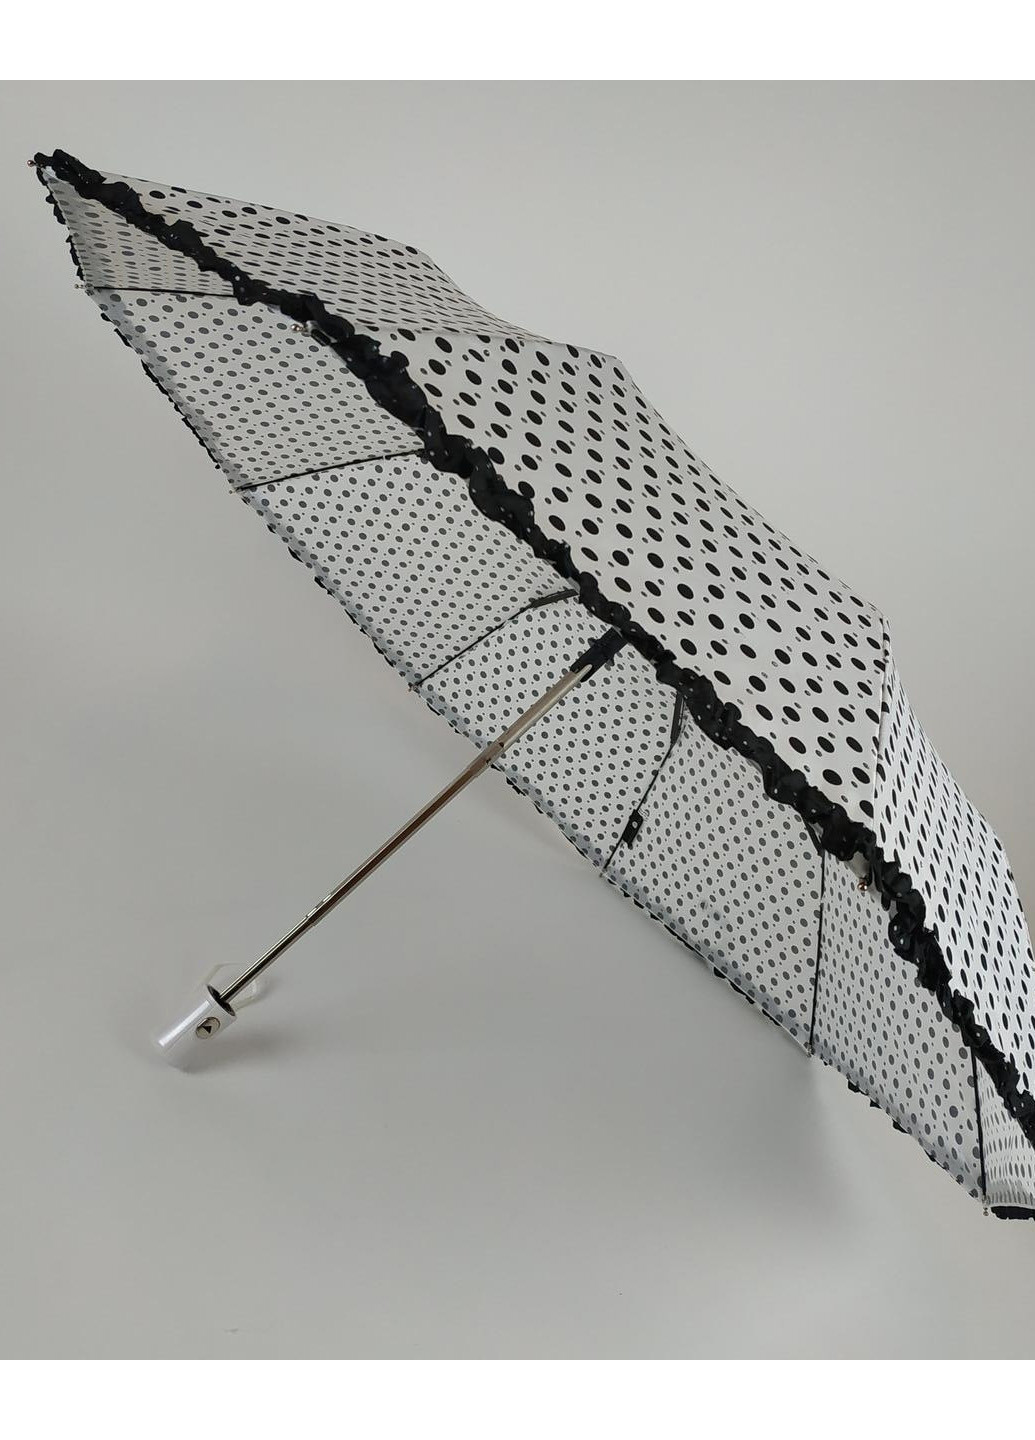 Женский полуавтоматический зонт (33057) 101 см S&L (189978922)